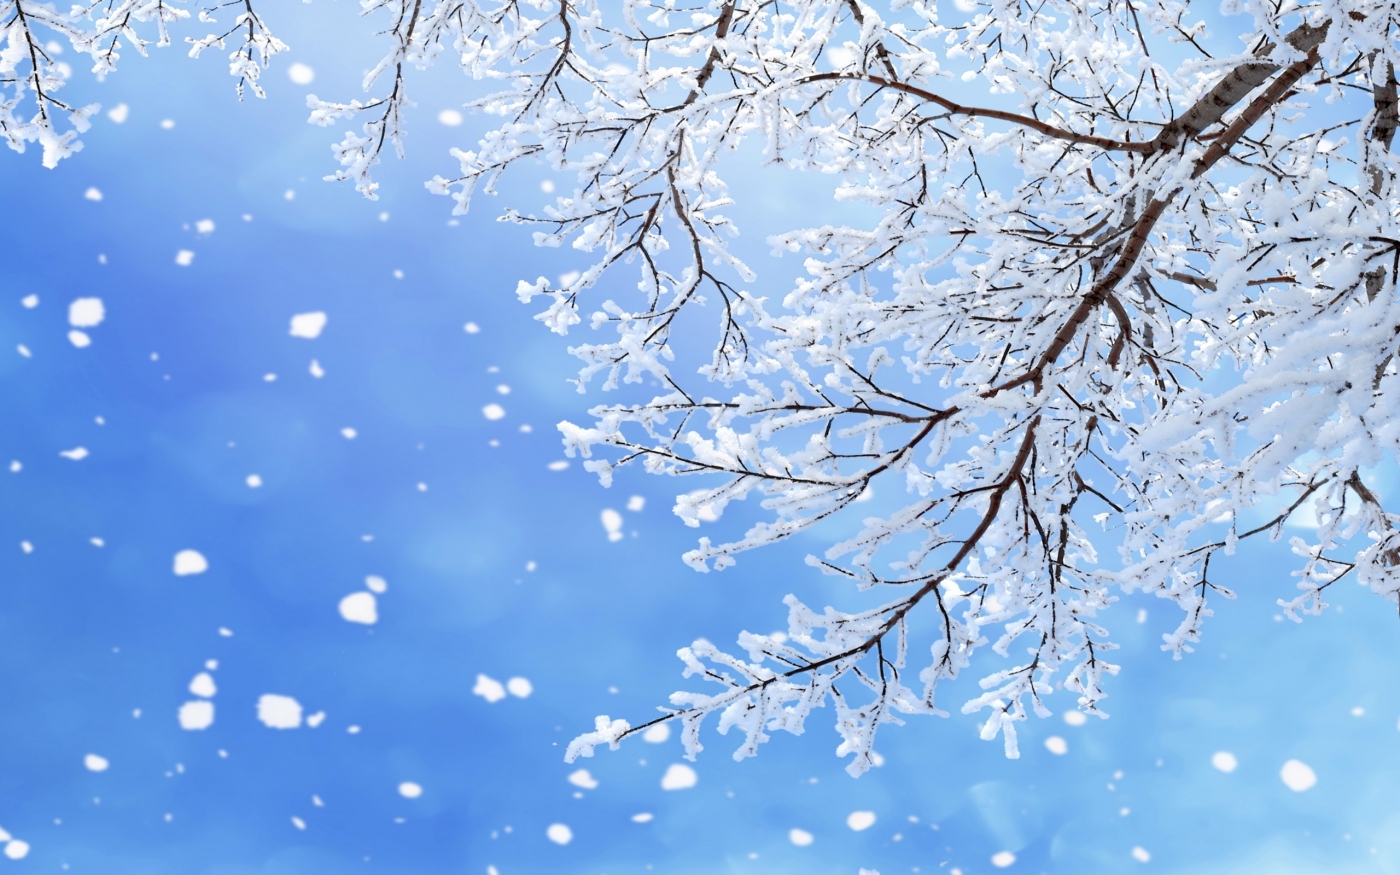 高清晰唯美冬季雪景自然景色壁纸下载 欧莱凯设计网 08php Com